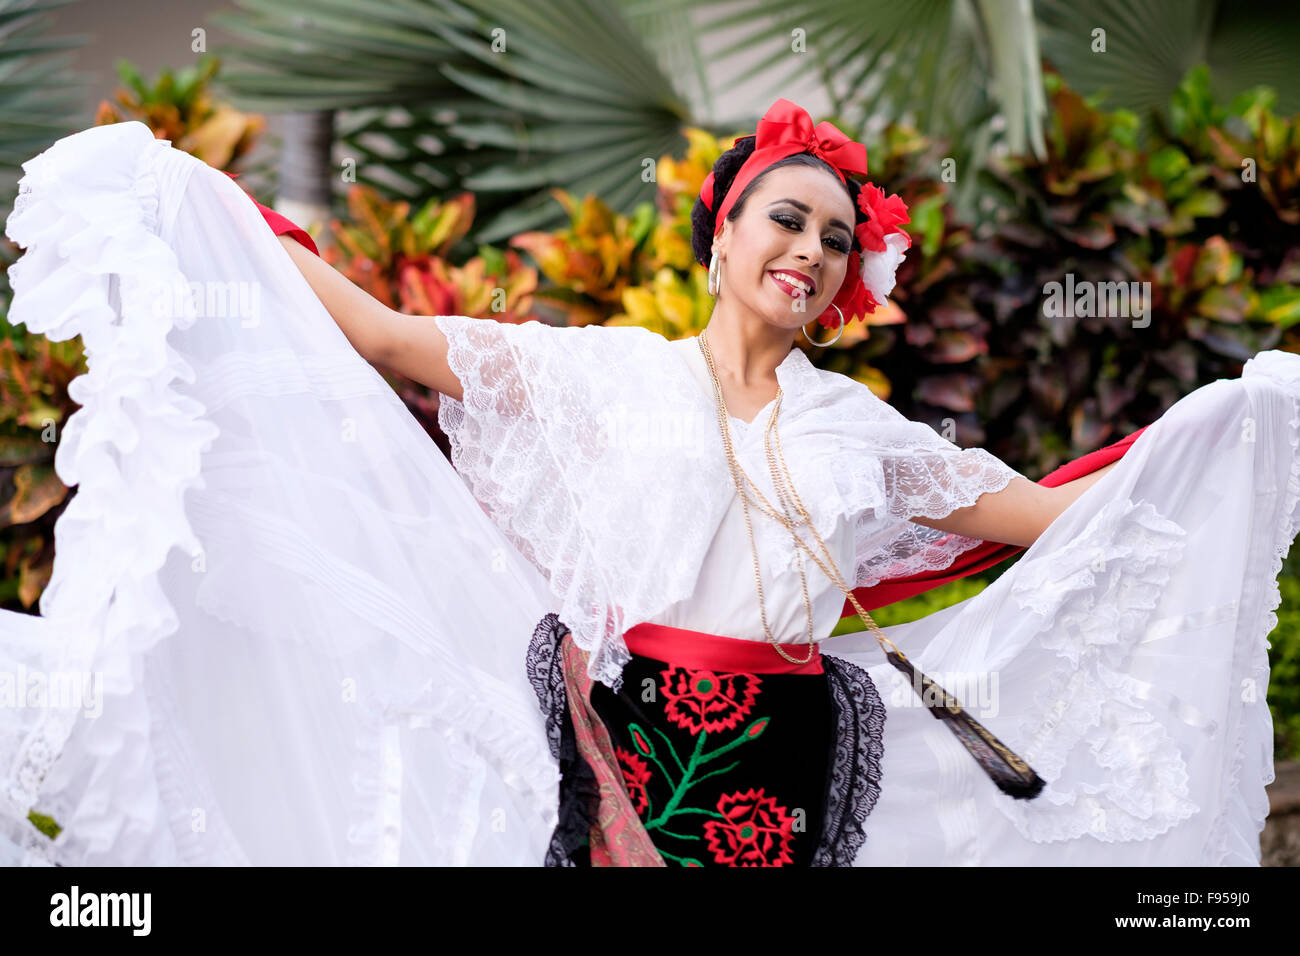 Frau tanzen - Puerto Vallarta, Jalisco, Mexiko. Xiutla Tänzer - eine folkloristische mexikanische Tanzgruppe in traditionellen Kostümen re Stockfoto